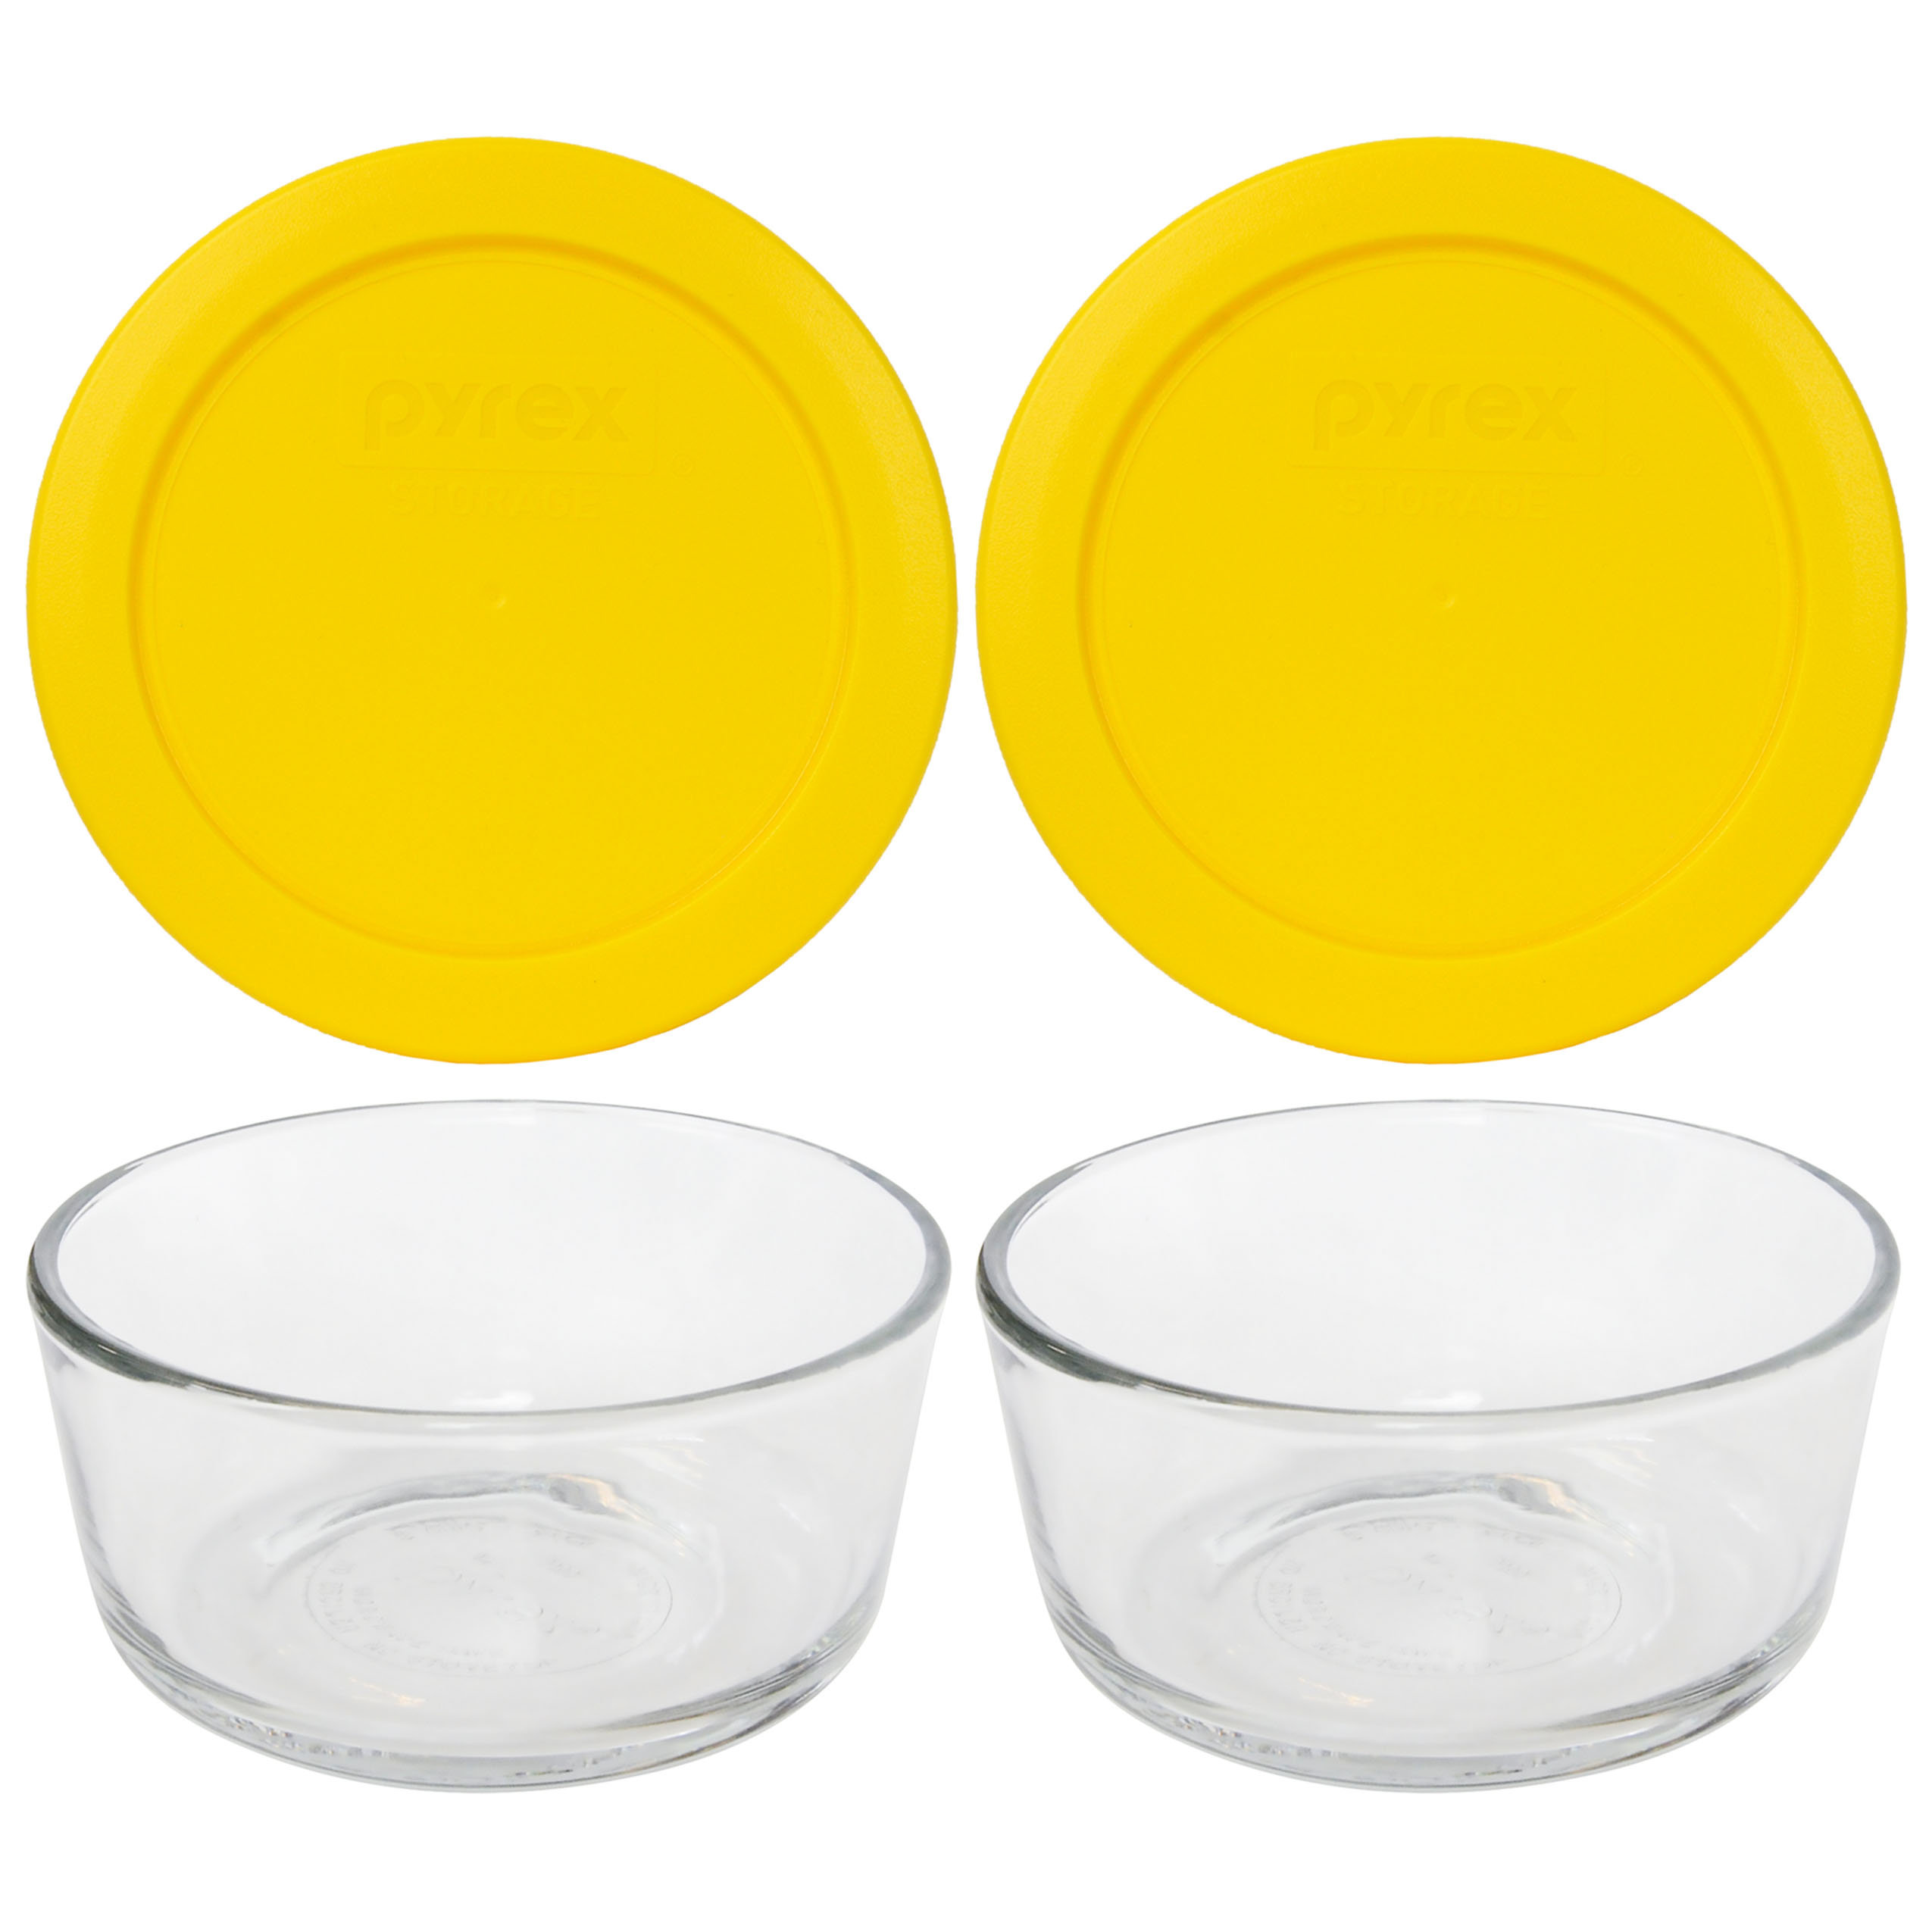 https://assets.wfcdn.com/im/96573460/compr-r85/2295/229537367/pyrex-7200-glass-bowls-7200-pc-matching-lids.jpg